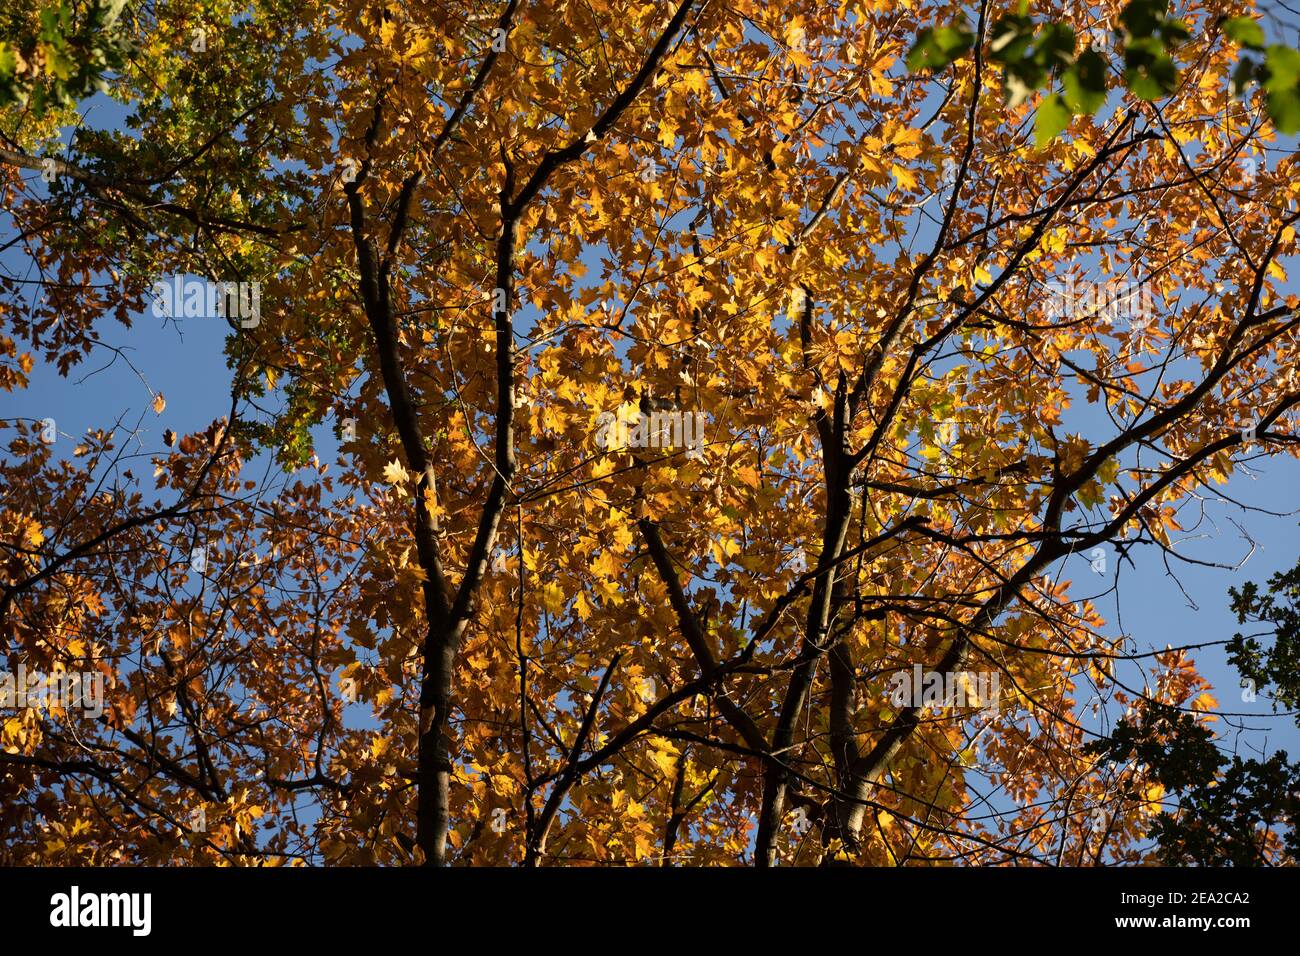 Foglie d'autunno colorate sugli alberi illuminate dalla luce del sole con un bel cielo blu sullo sfondo. Fogliame verde, marrone e giallo Foto Stock